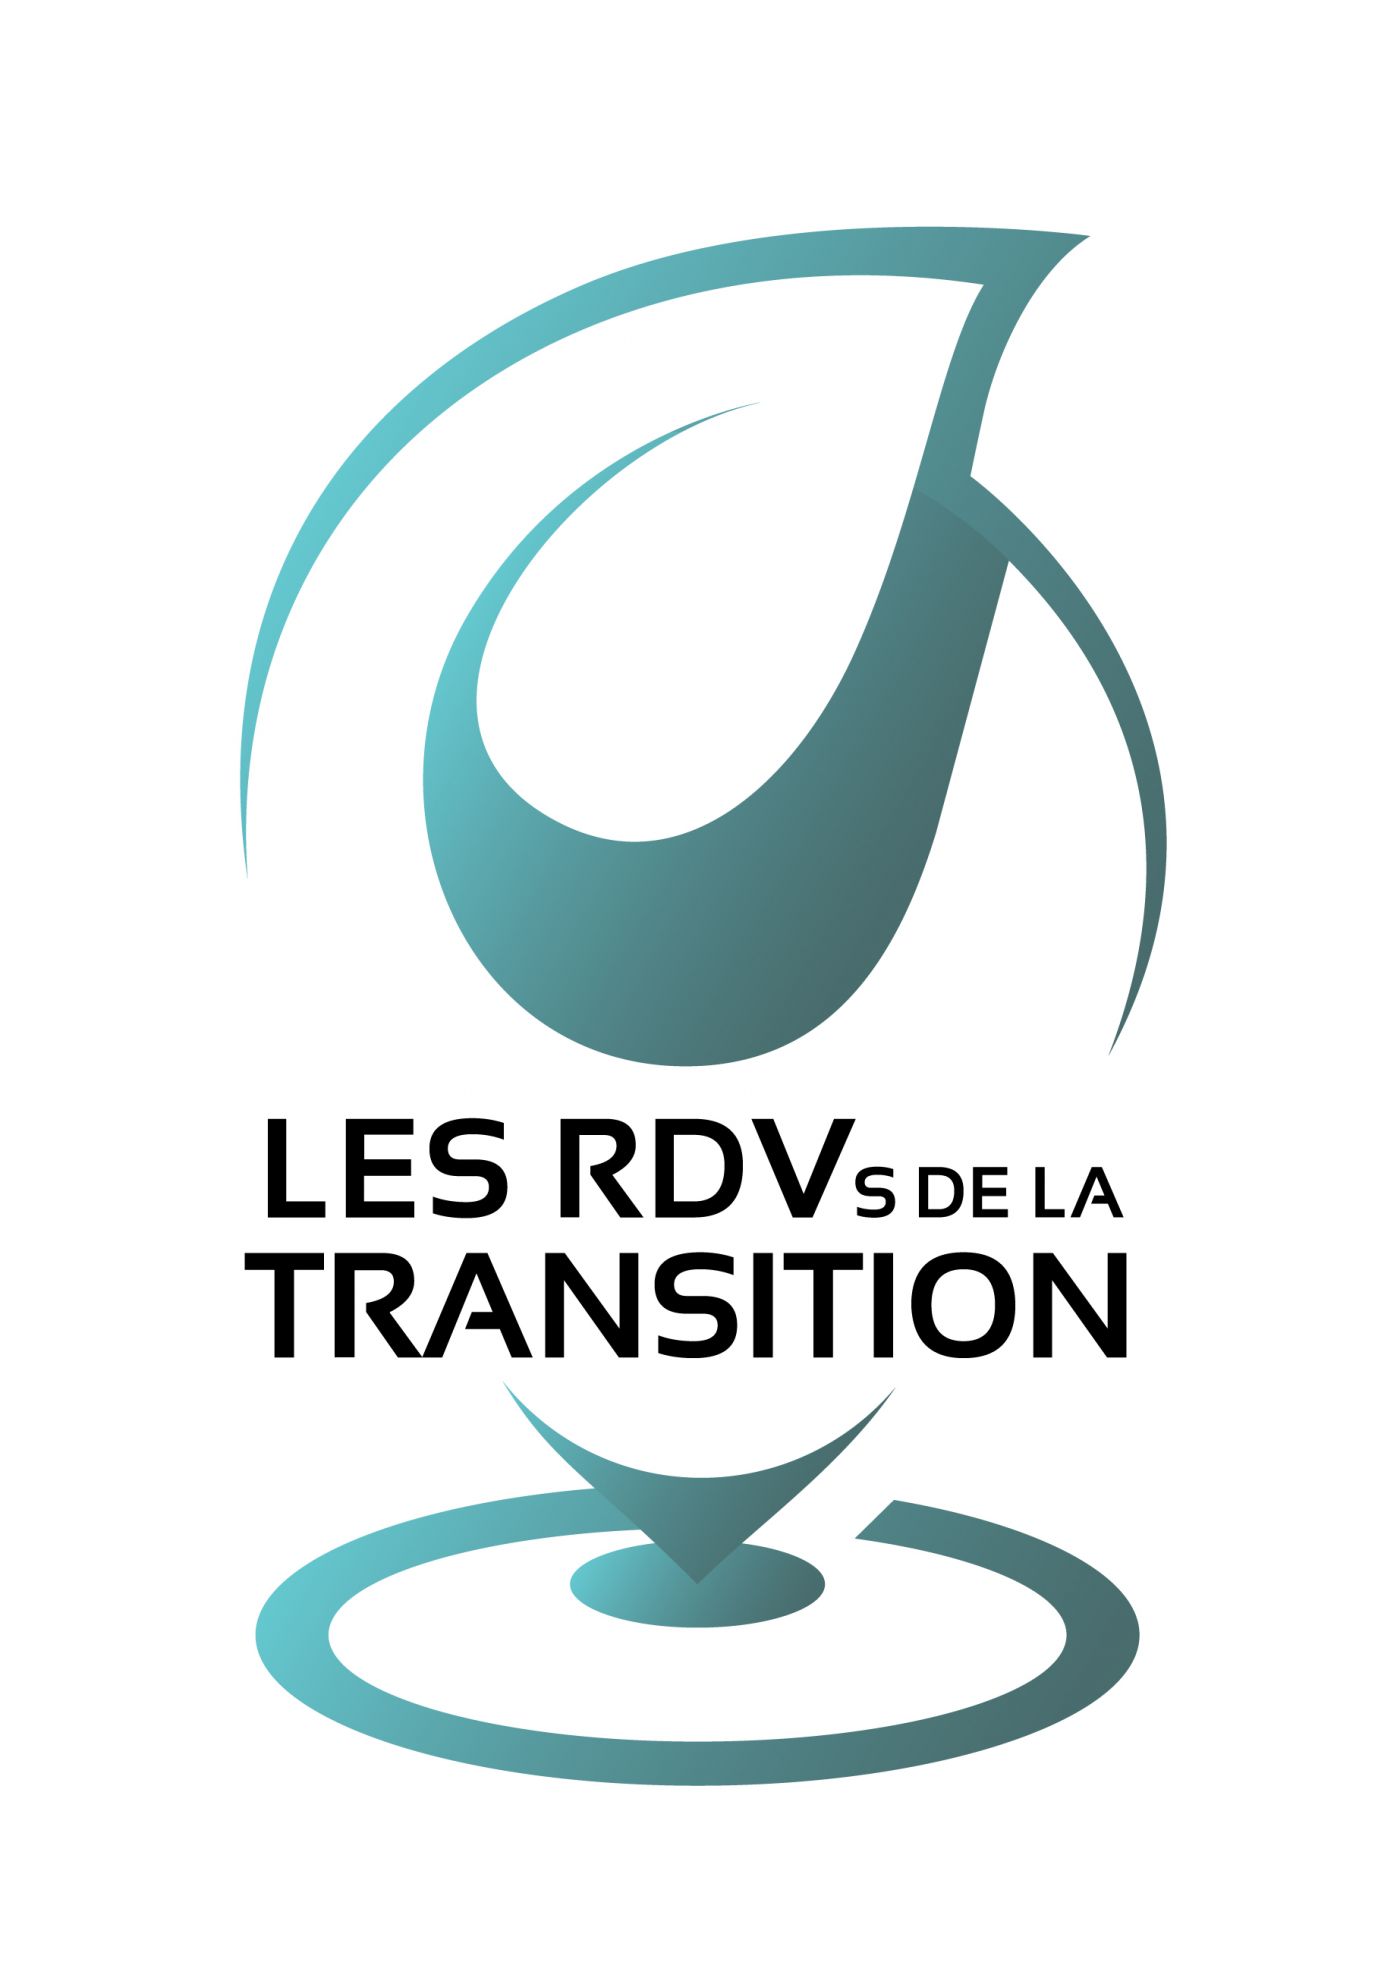 Les RDVs de la transition